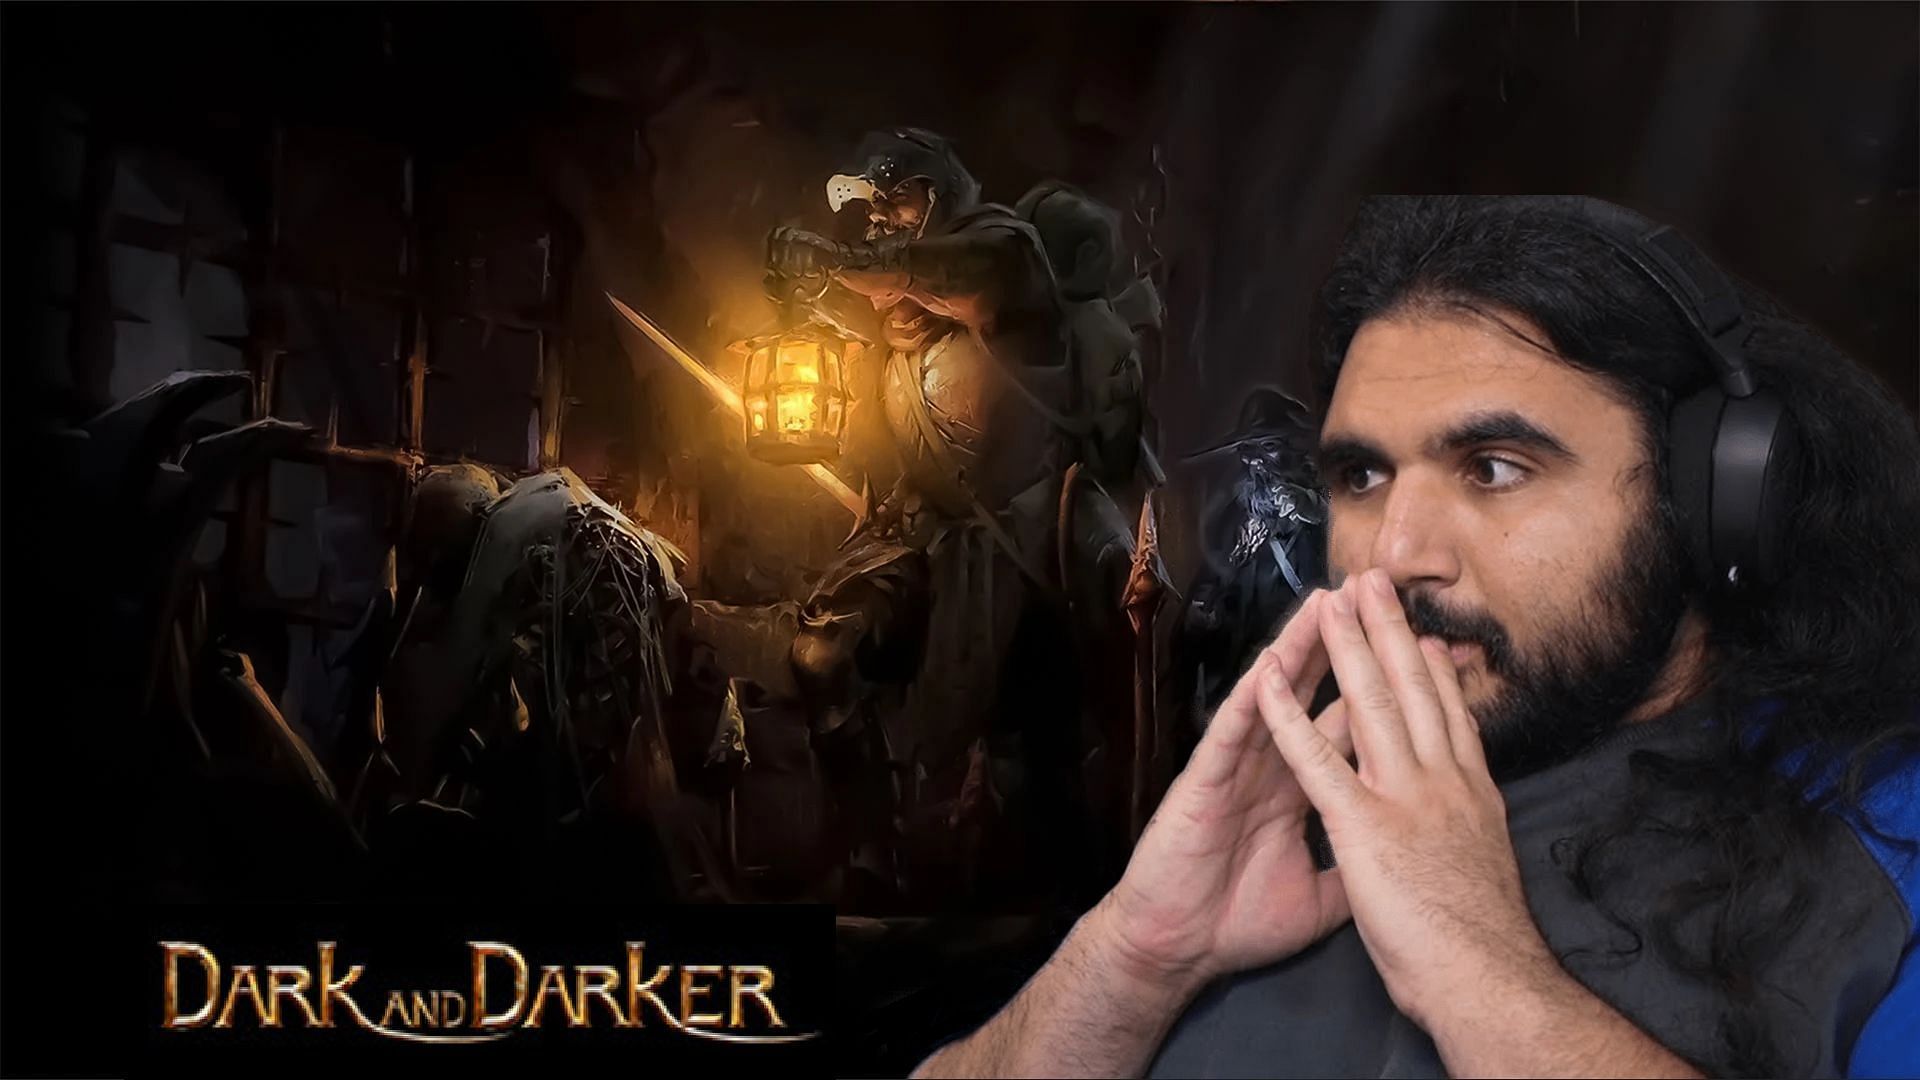 EsfandTV says Dark and Darker